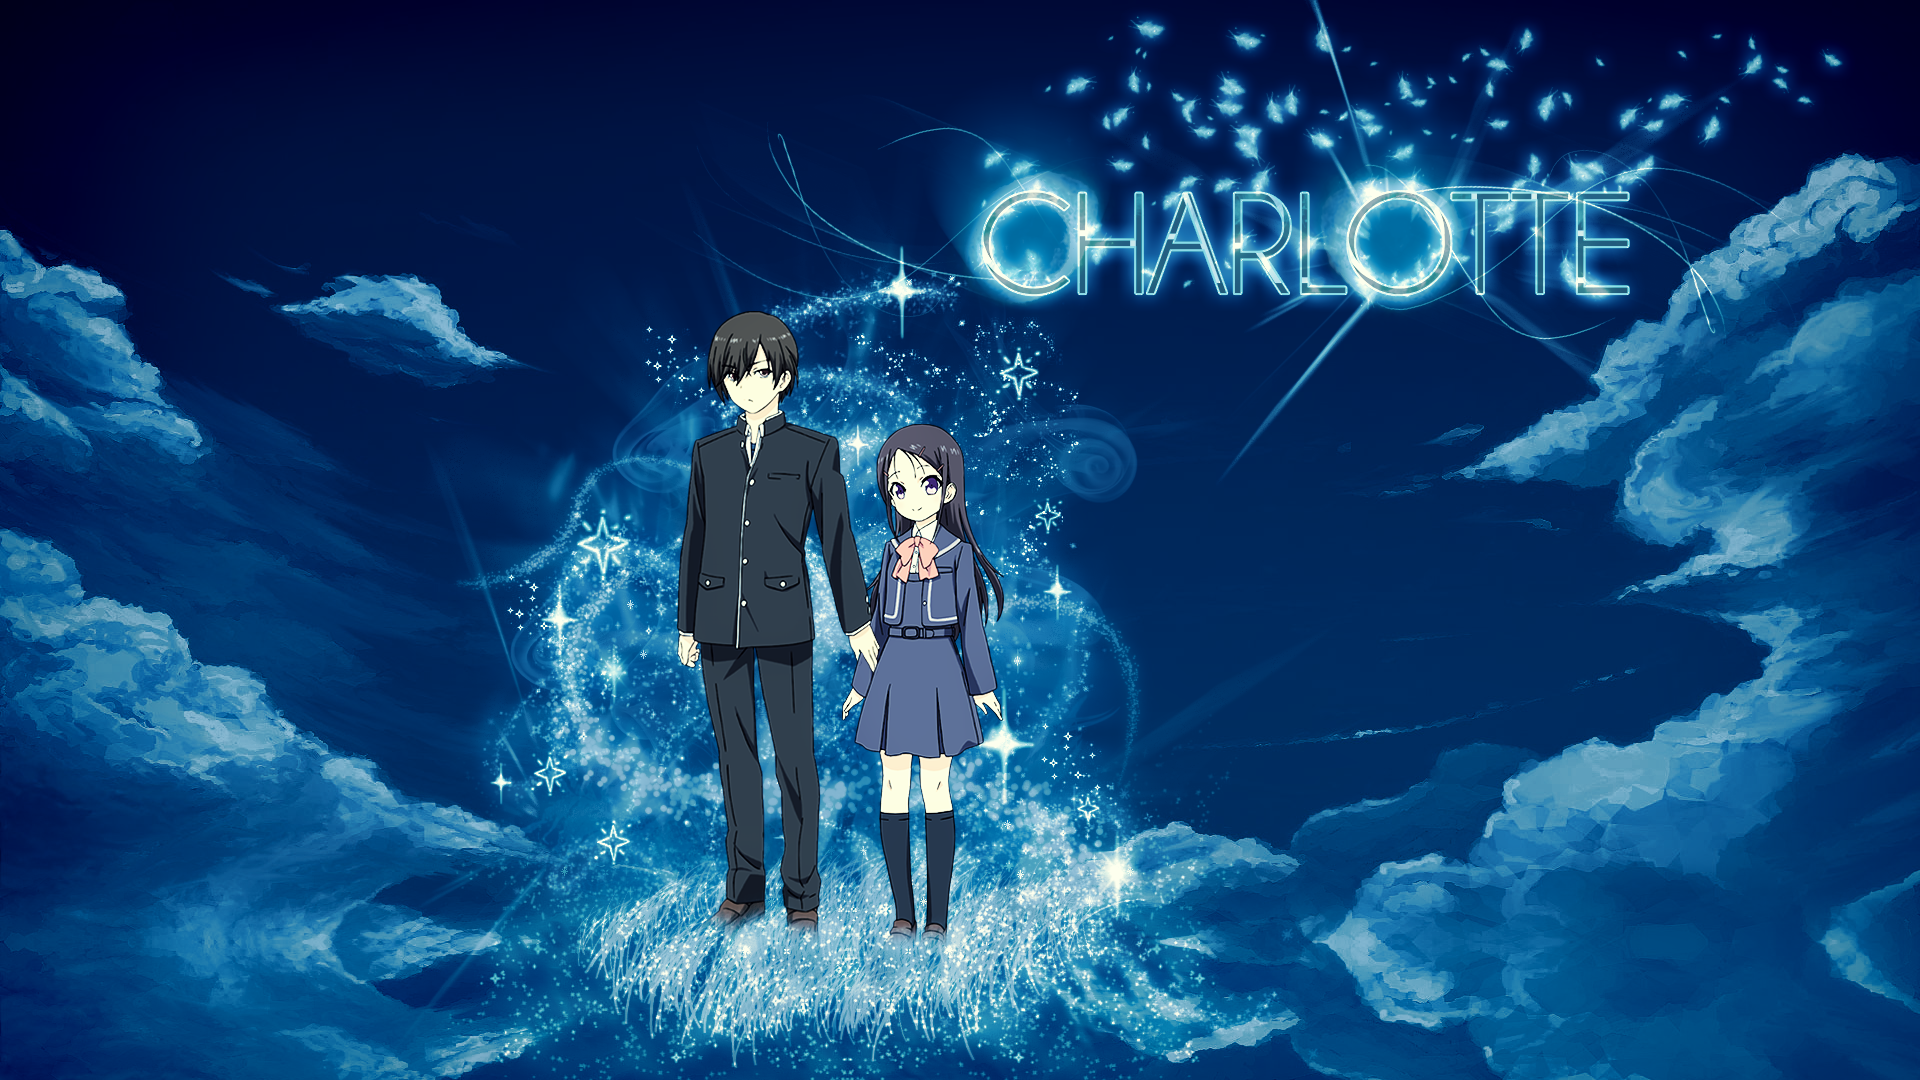 Charlotte (Anime Wallpaper) by GuncaPMV on DeviantArt